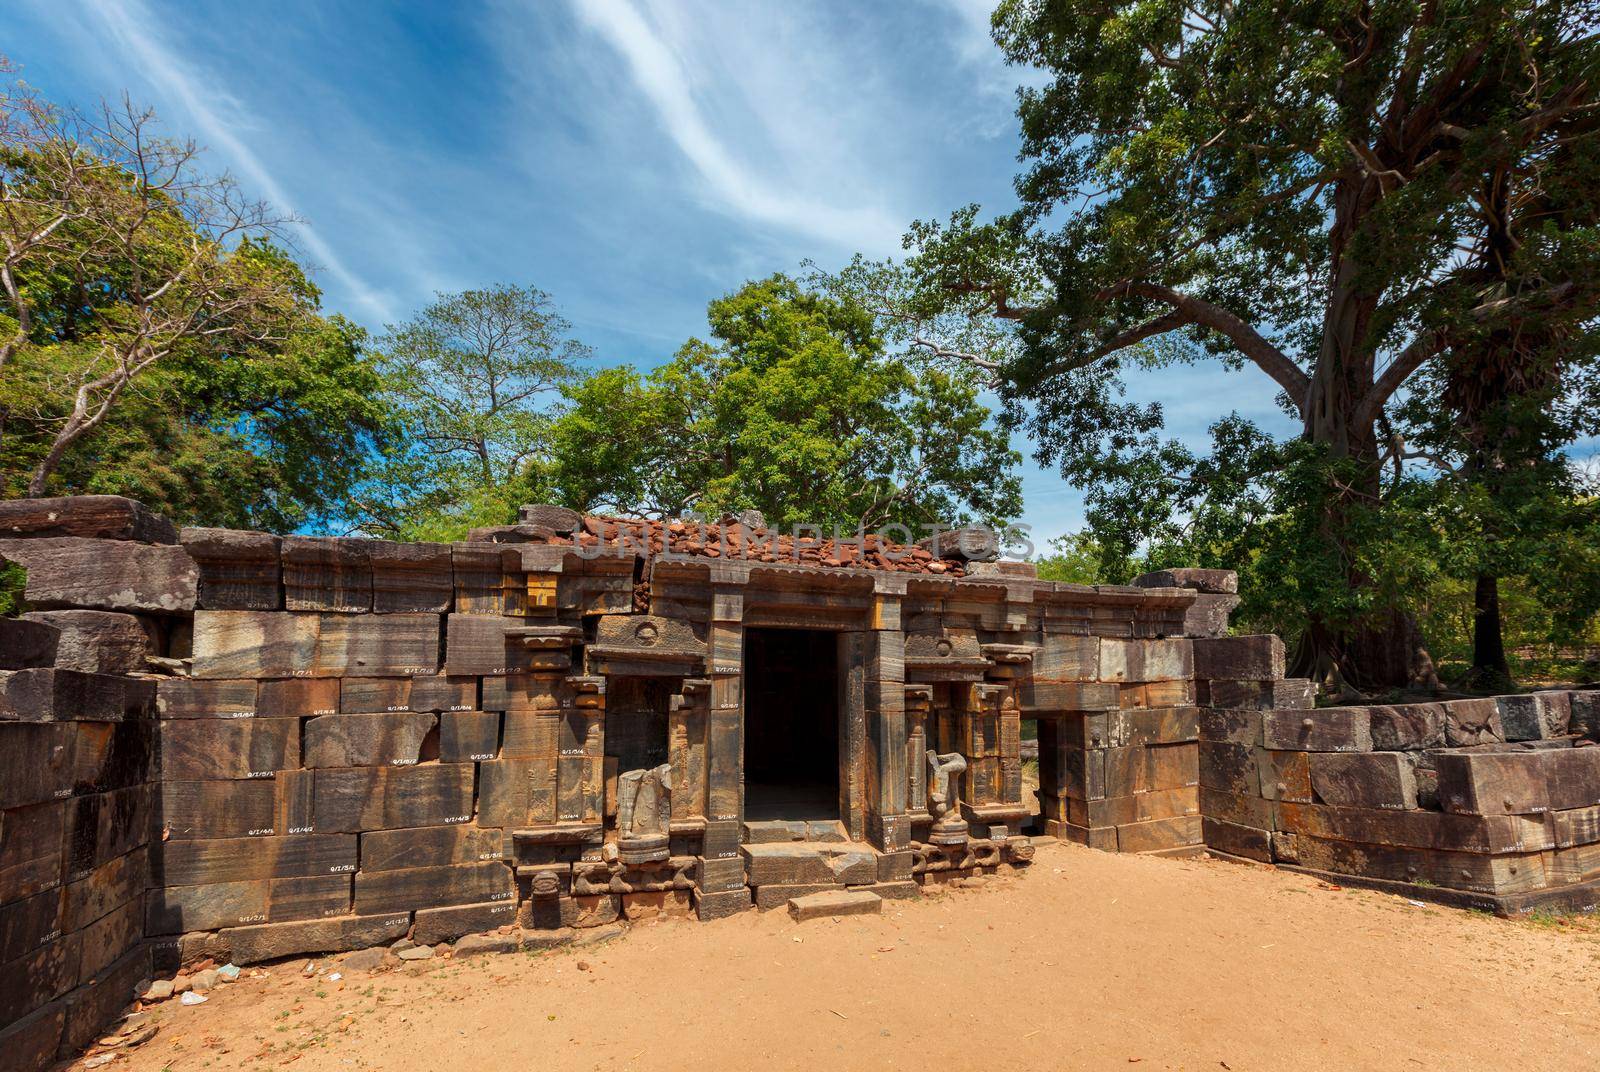 Shiva devale Shiva temple ruins in ancient city Pollonaruwa, Sri Lanka by dimol